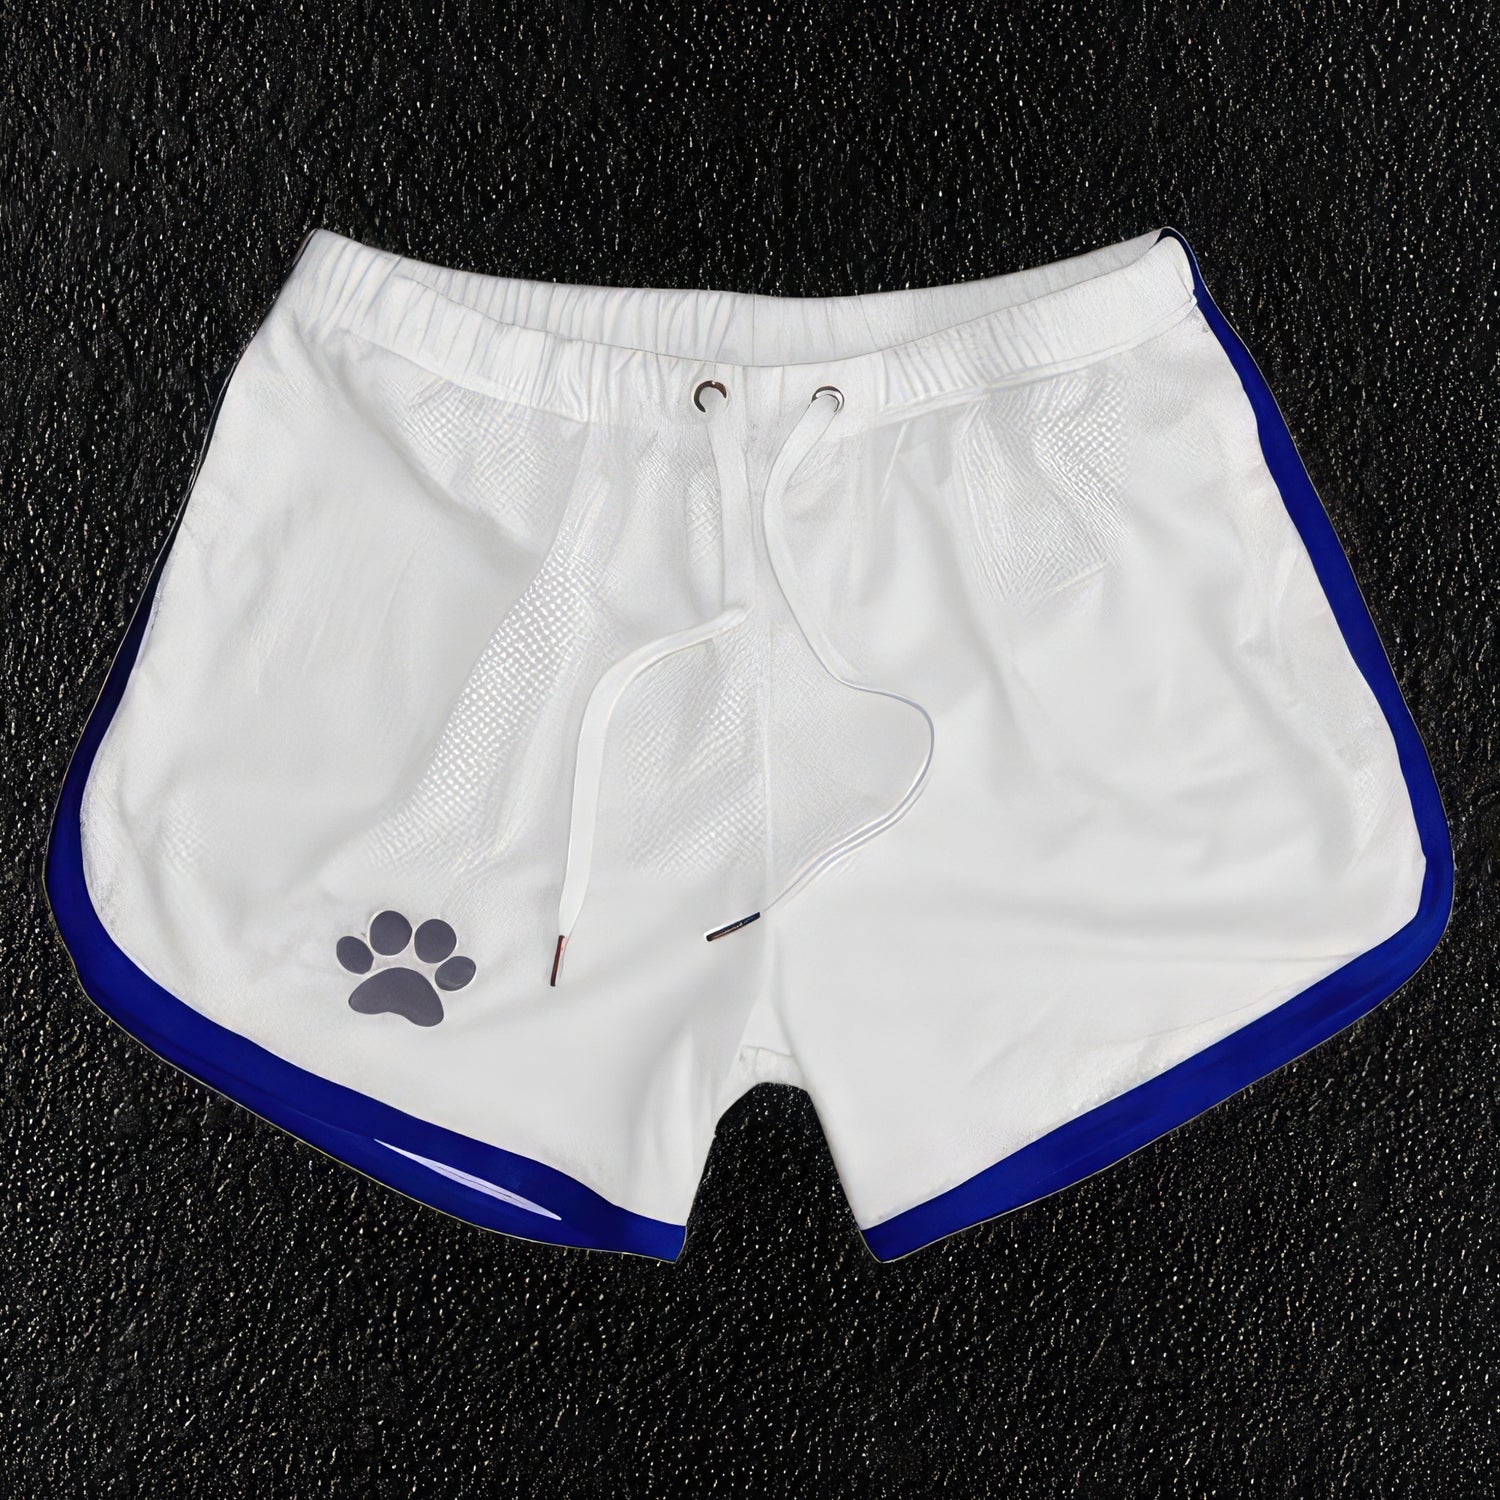 White & blue men's beach shorts